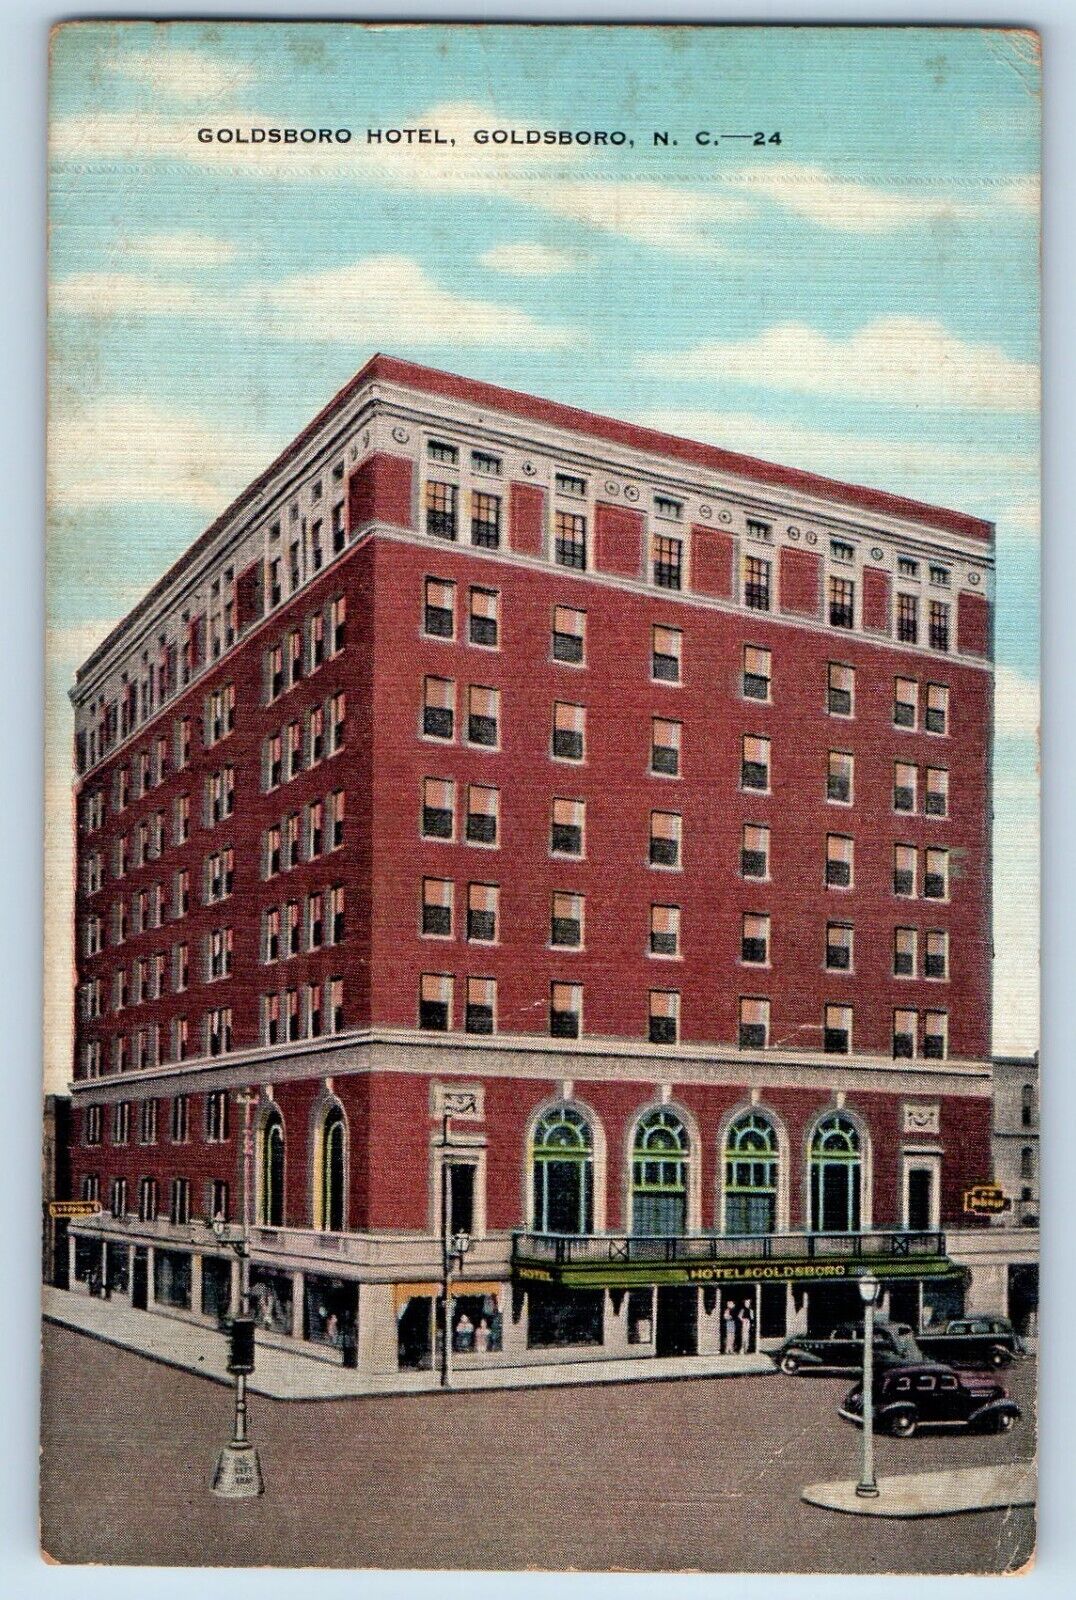 Goldsboro North Carolina Postcard Goldsboro Hotel Building Exterior 1942 Antique